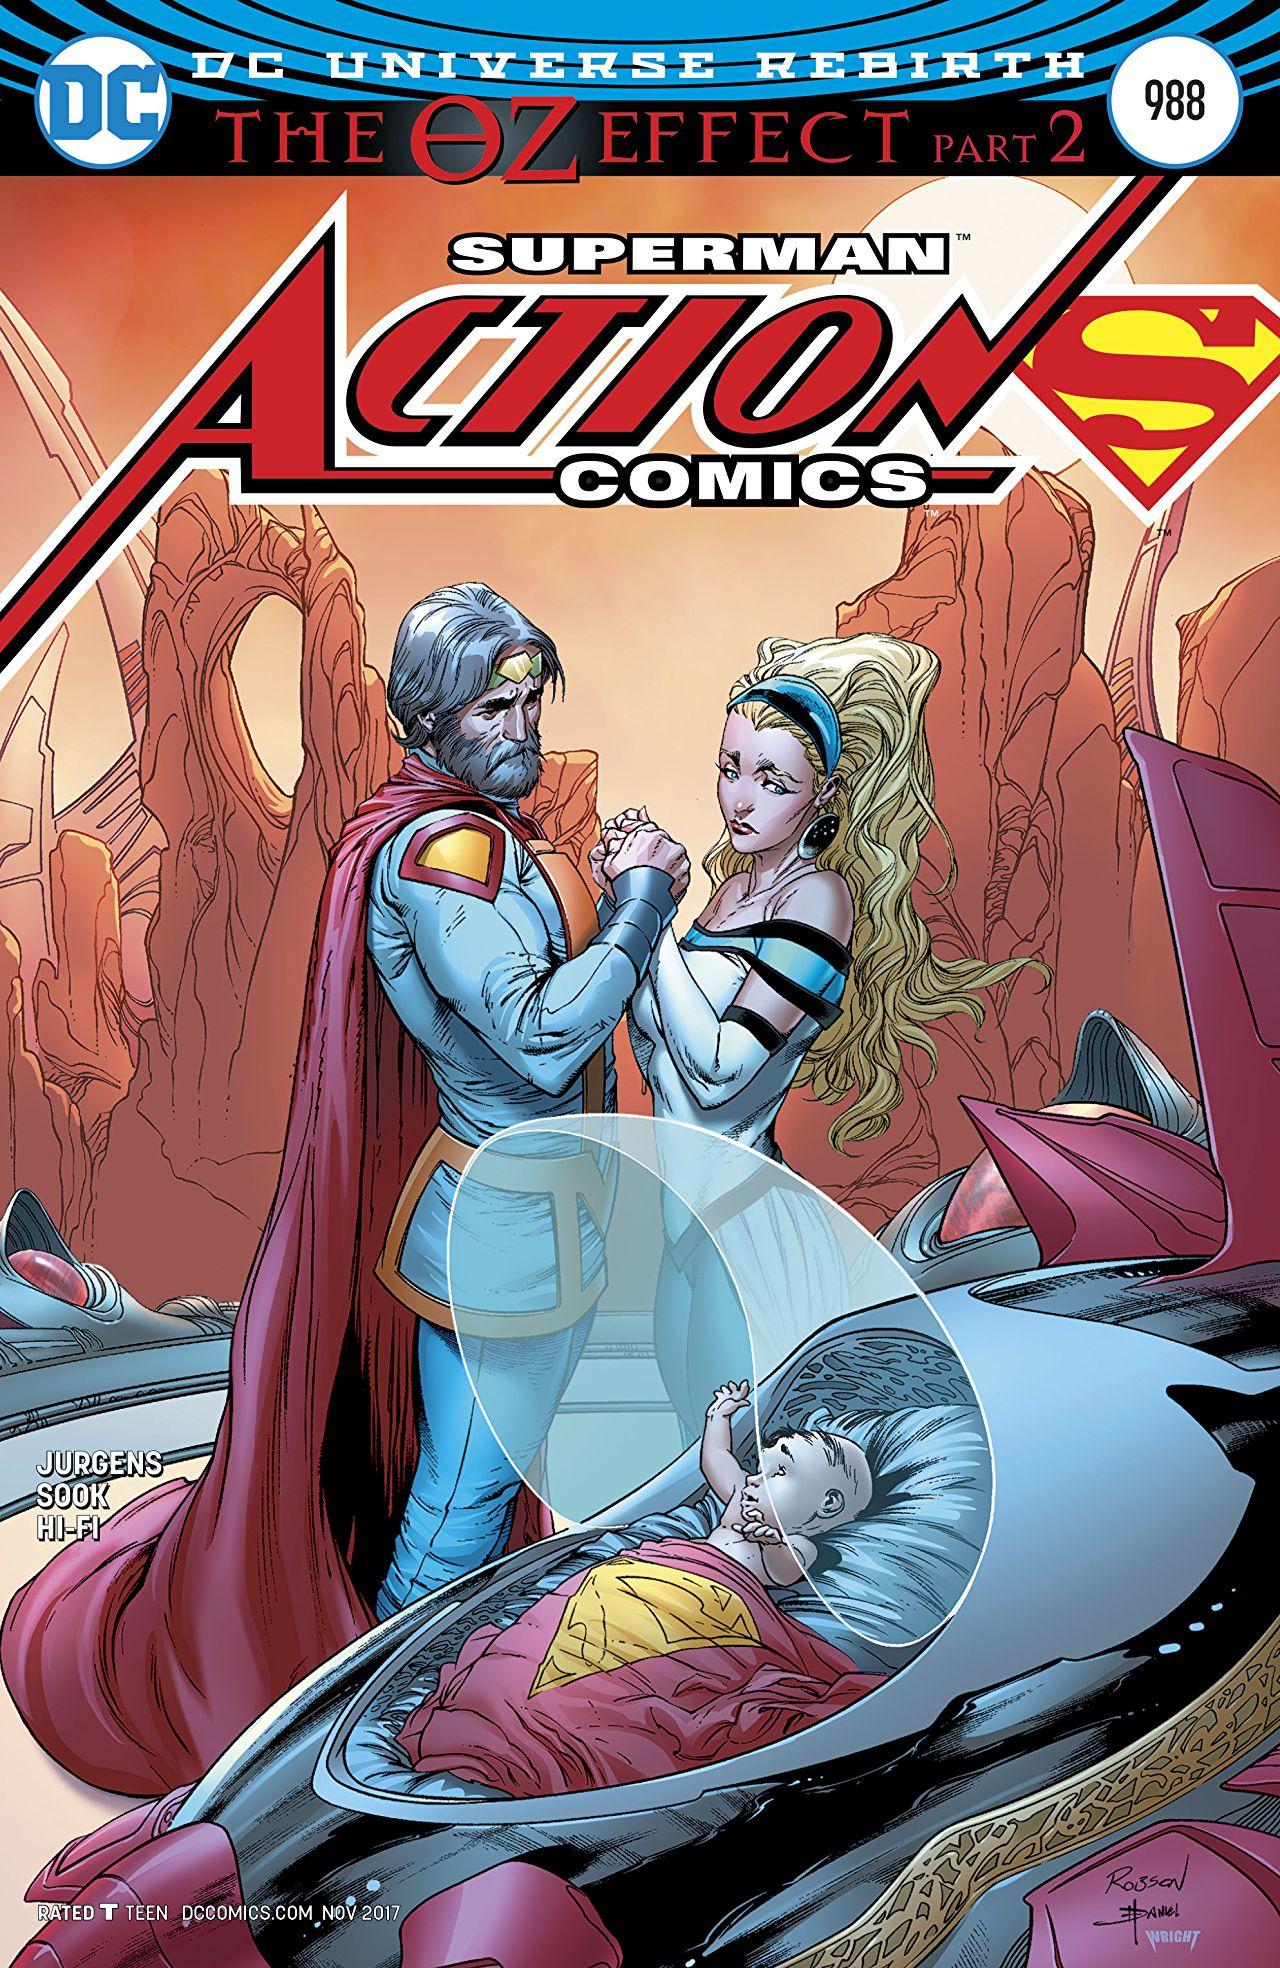 Action Comics Vol. 1 #988